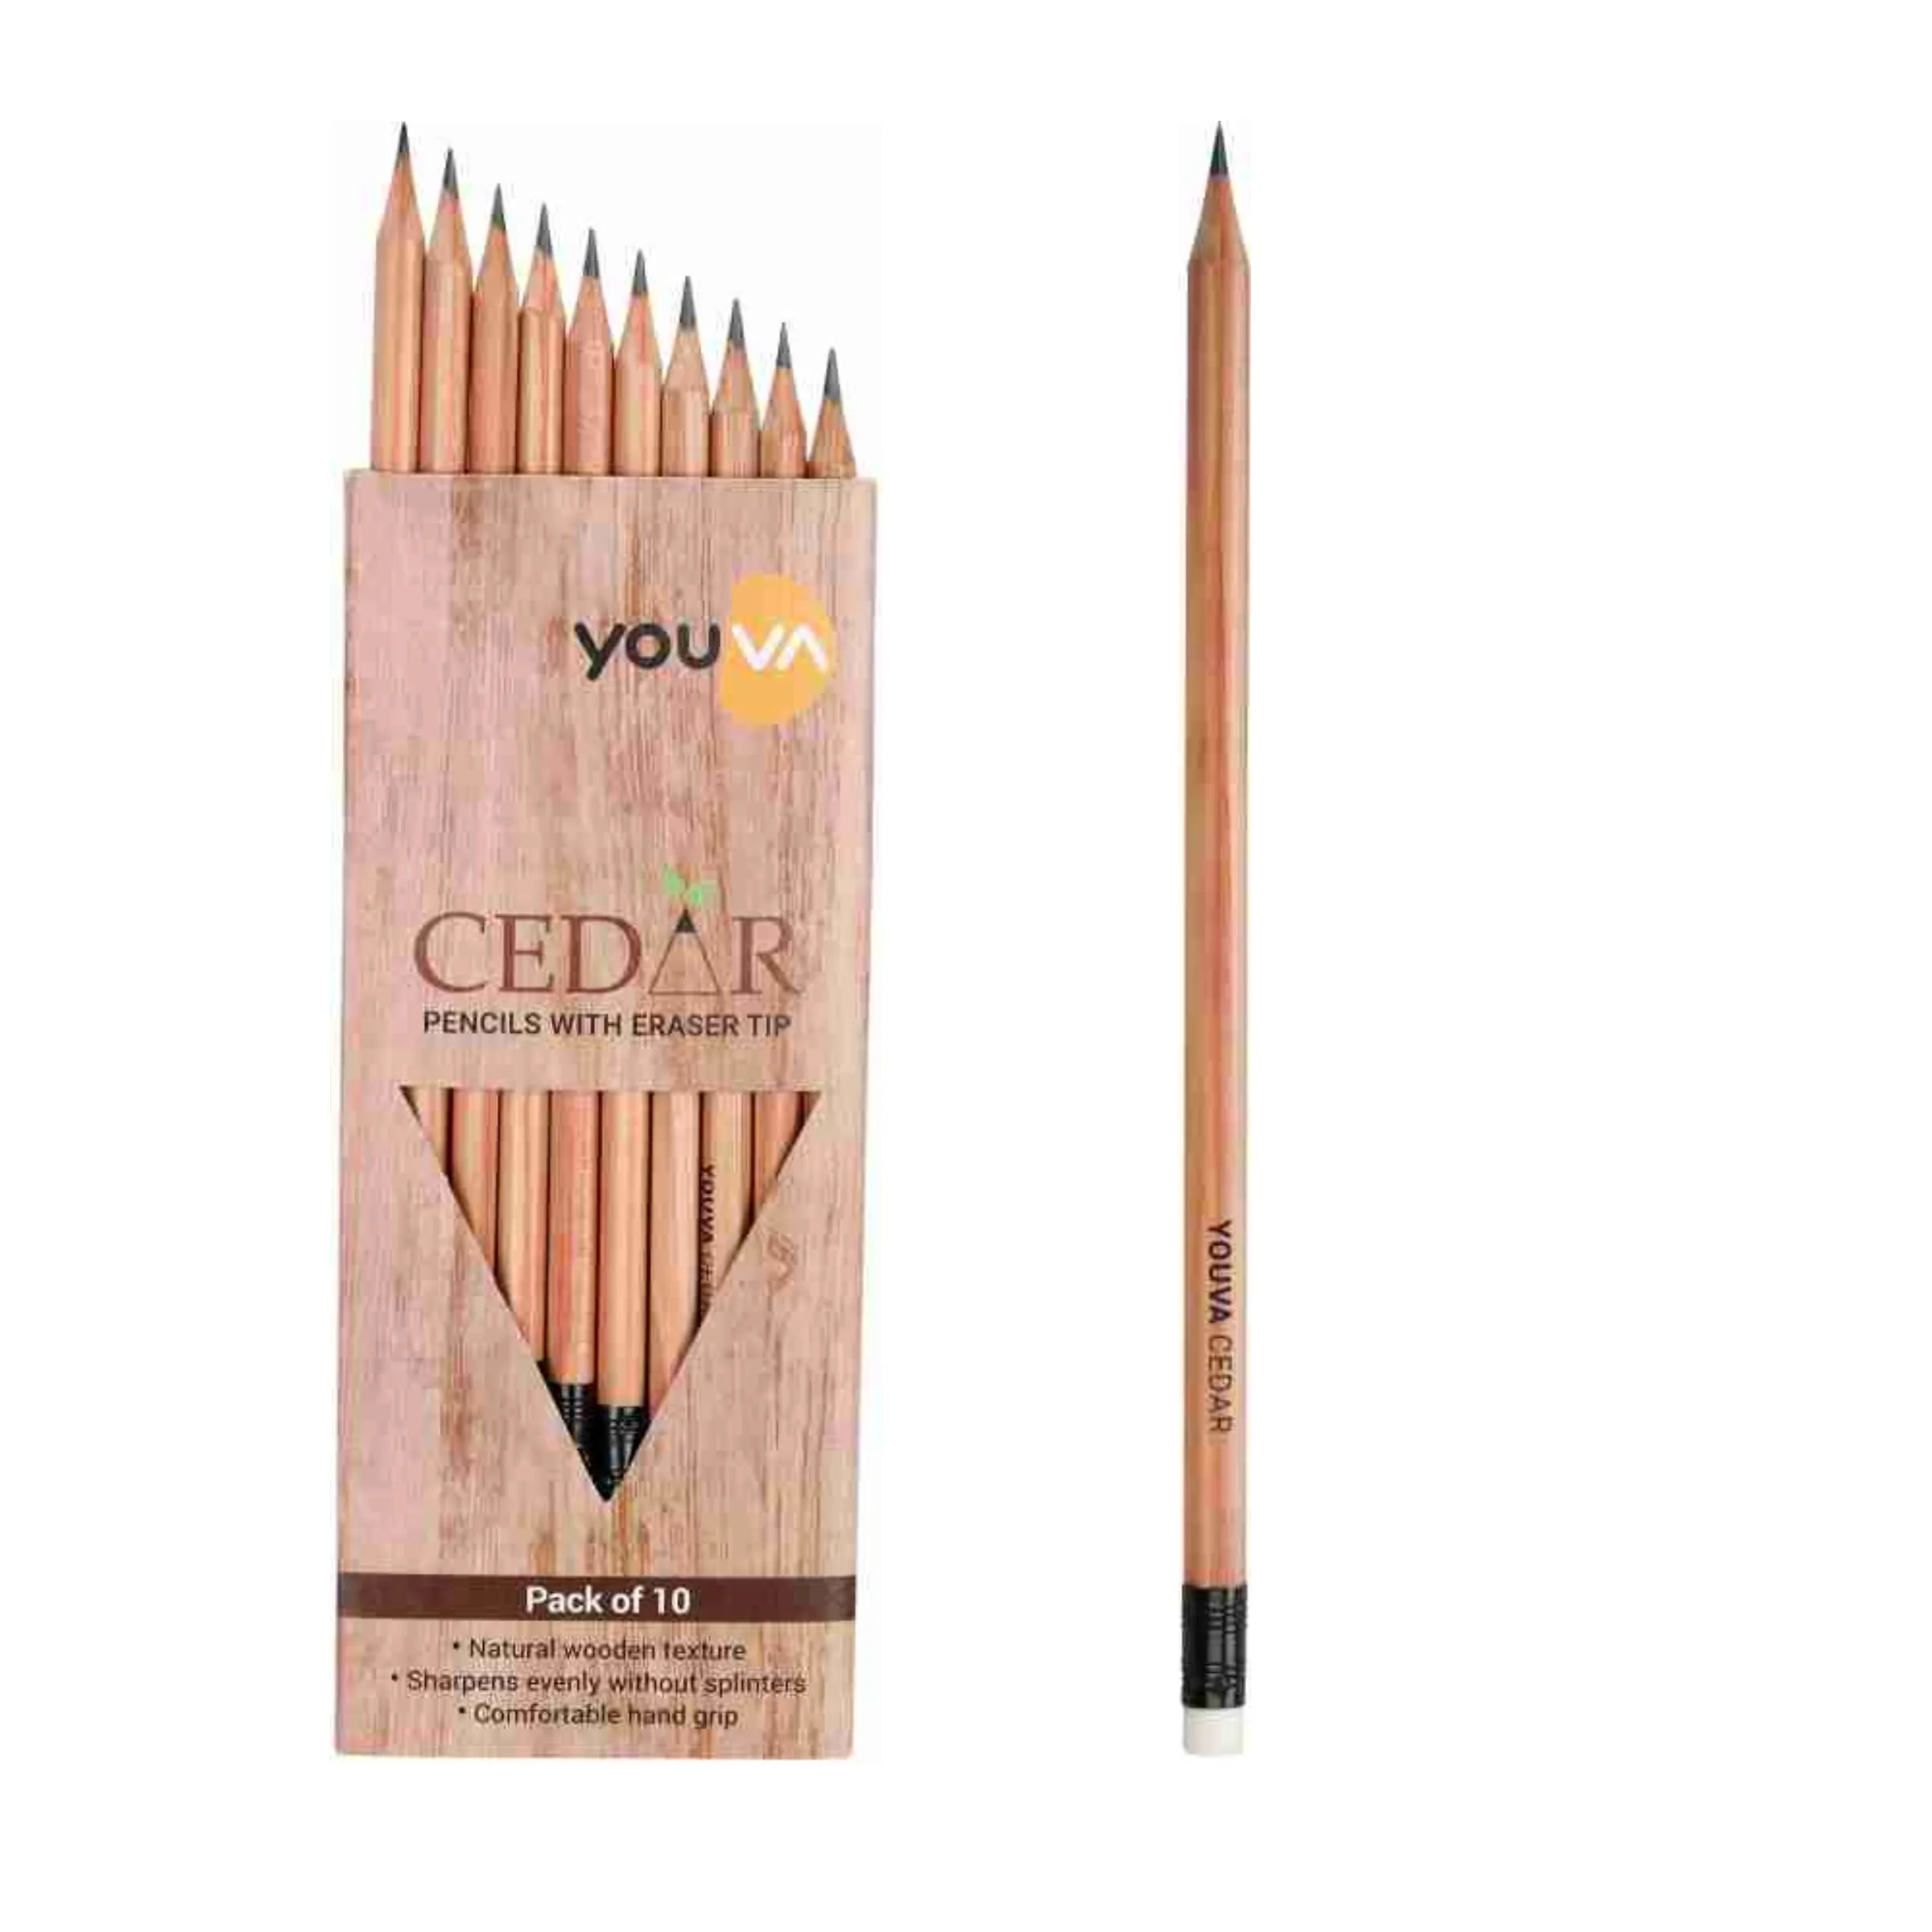 Navneet Youva Cedar Pencils With Eraser Tip (1 Pack of 10 Pencils)